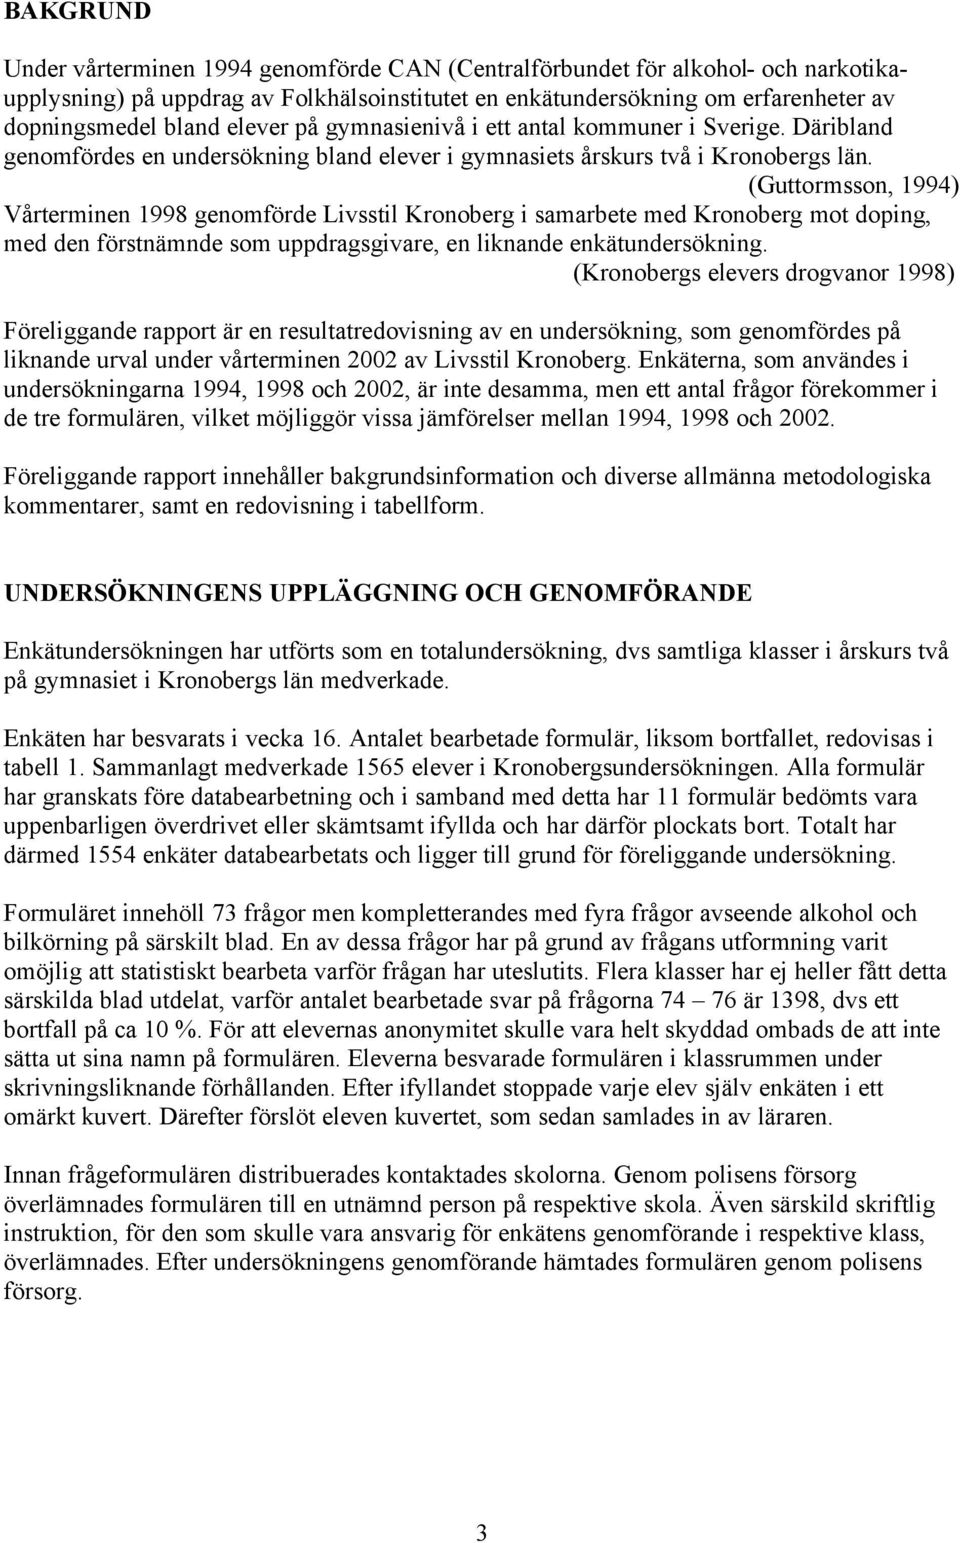 (Guttormsson, 1994) Vårterminen 1998 genomförde Livsstil Kronoberg i samarbete med Kronoberg mot doping, med den förstnämnde som uppdragsgivare, en liknande enkätundersökning.